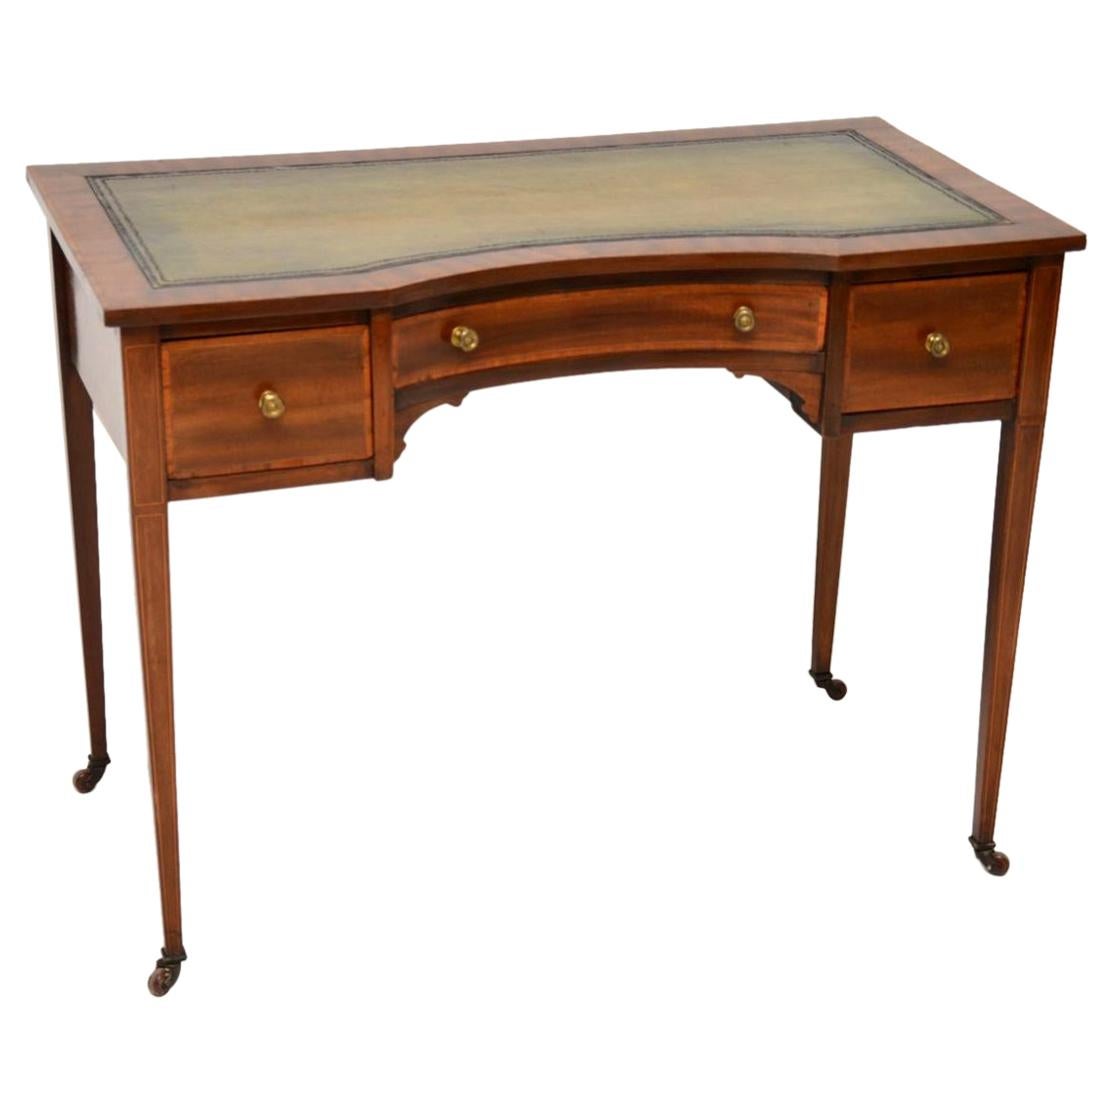 Antique Edwardian Inlaid Mahogany Writing Table / Desk